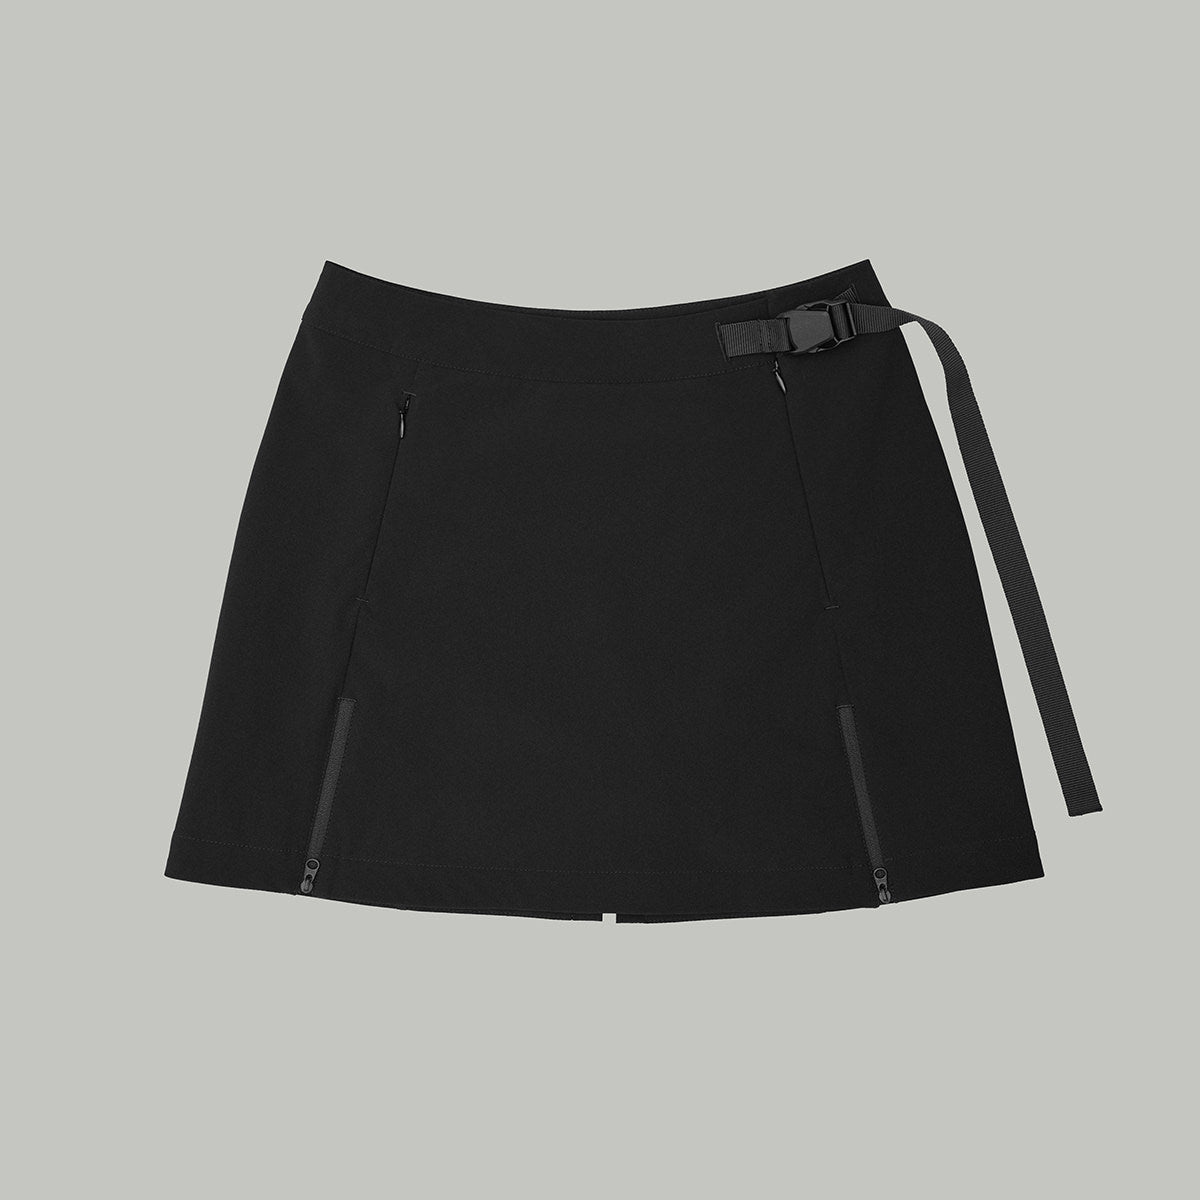 Tennis Inspired Skirt Gen.1 RD-TISKRT_GEN.1 BLACK